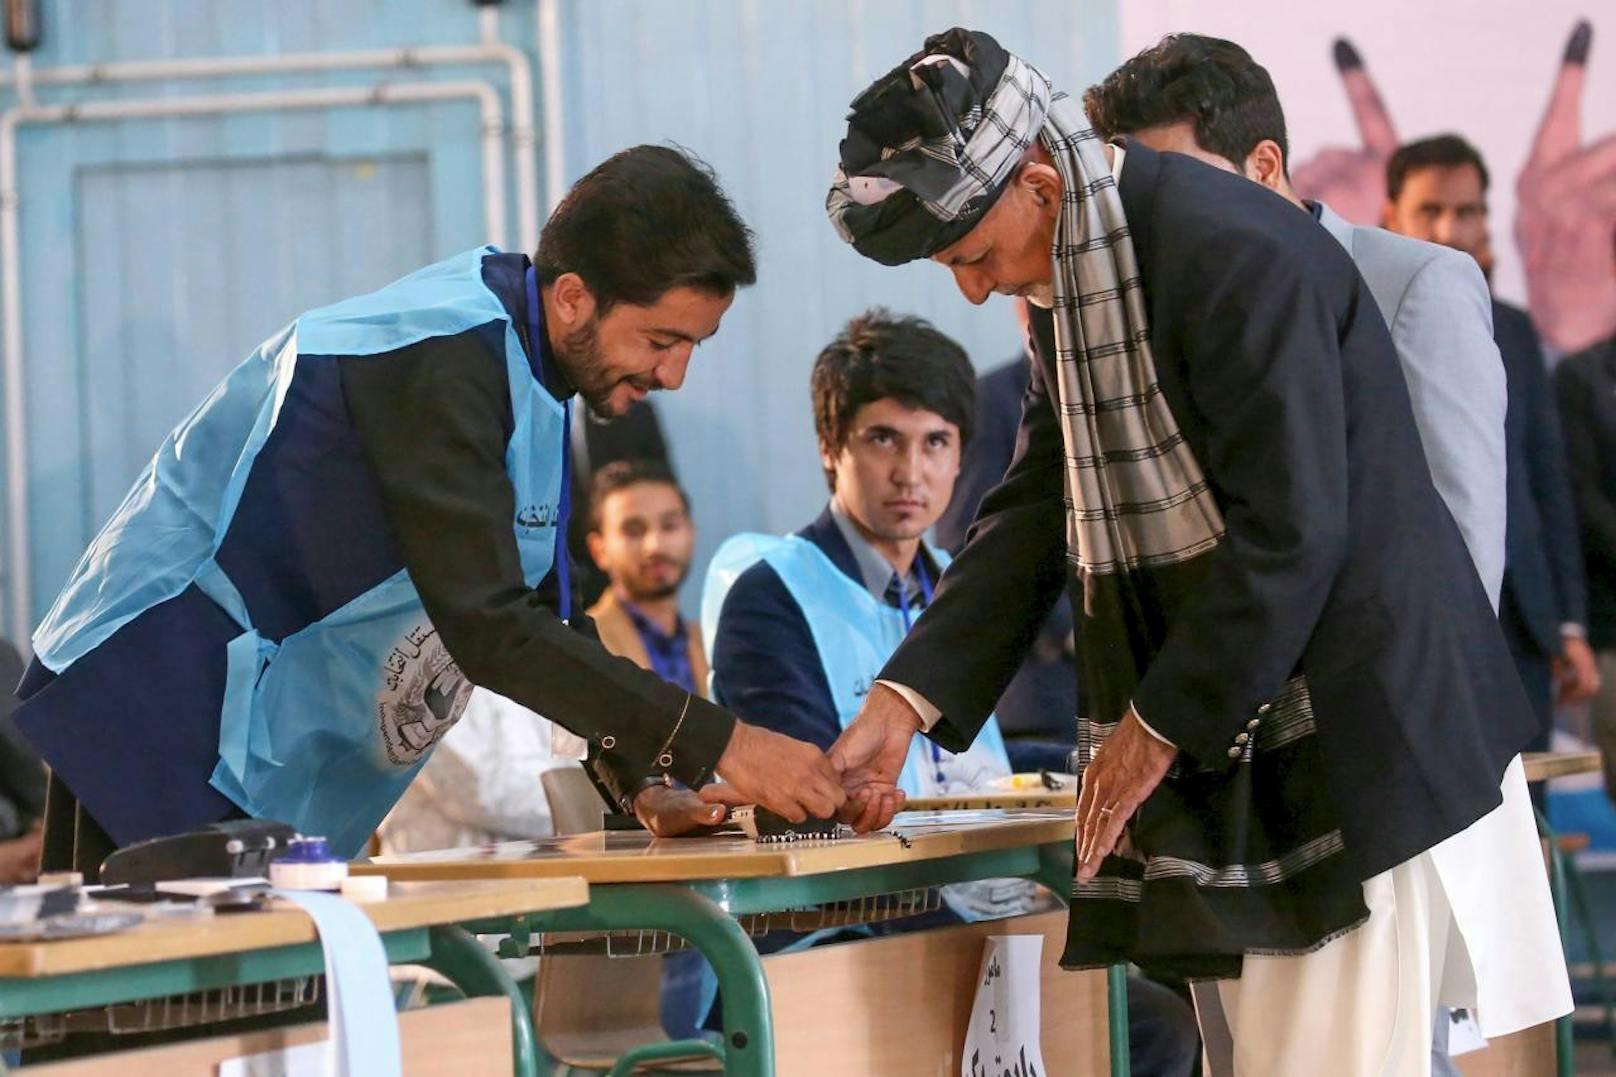 Die Wahlkommission äußerte sich zufrieden über den Verlauf der Abstimmungen: Verglichen mit früheren Abstimmungen sei es "die gesündeste und fairste Wahl" gewesen. Im Bild: Der amtierende Präsident und Kandidat Ashraf Ghani bei der Stimmabgabe.